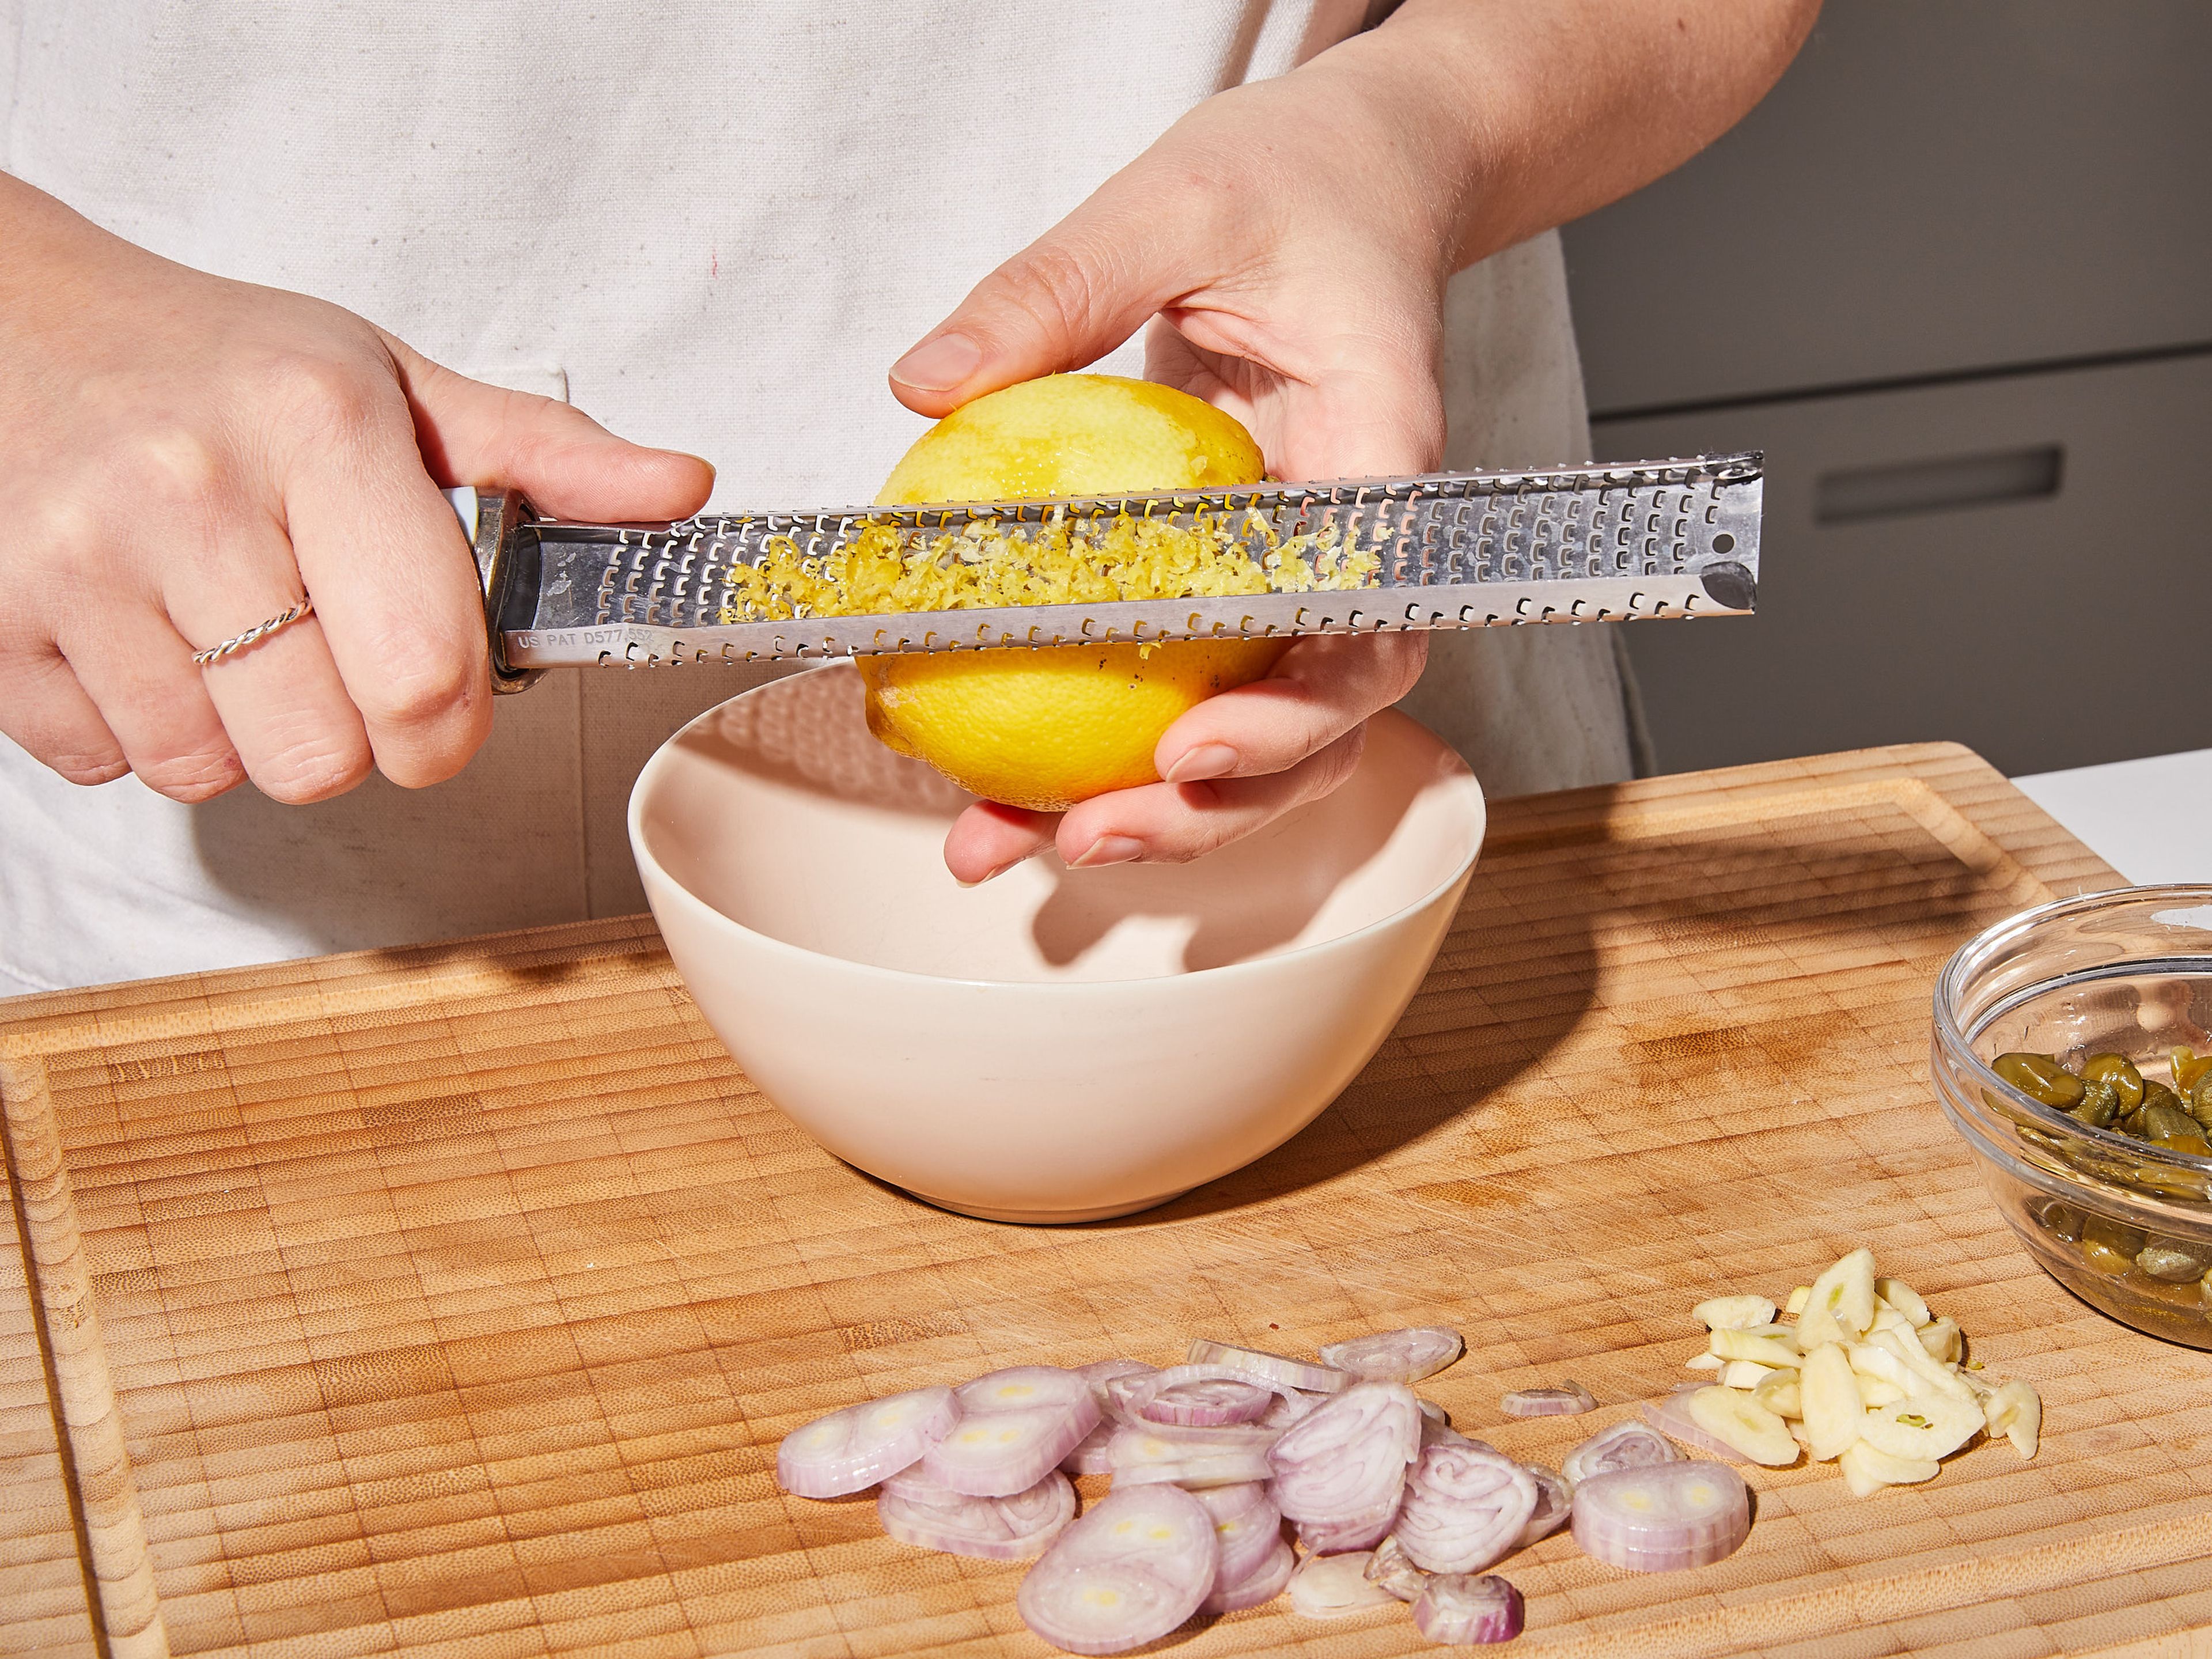 Knoblauch und Schalotte schälen und in feine Scheiben schneiden. Zitronenschale abreiben, dann die Zitrone halbieren. Eine Hälfte auspressen und den Saft in eine kleine Schüssel geben. Die andere Hälfte in Stücke schneiden und bis zum Servieren zur Seite stellen.